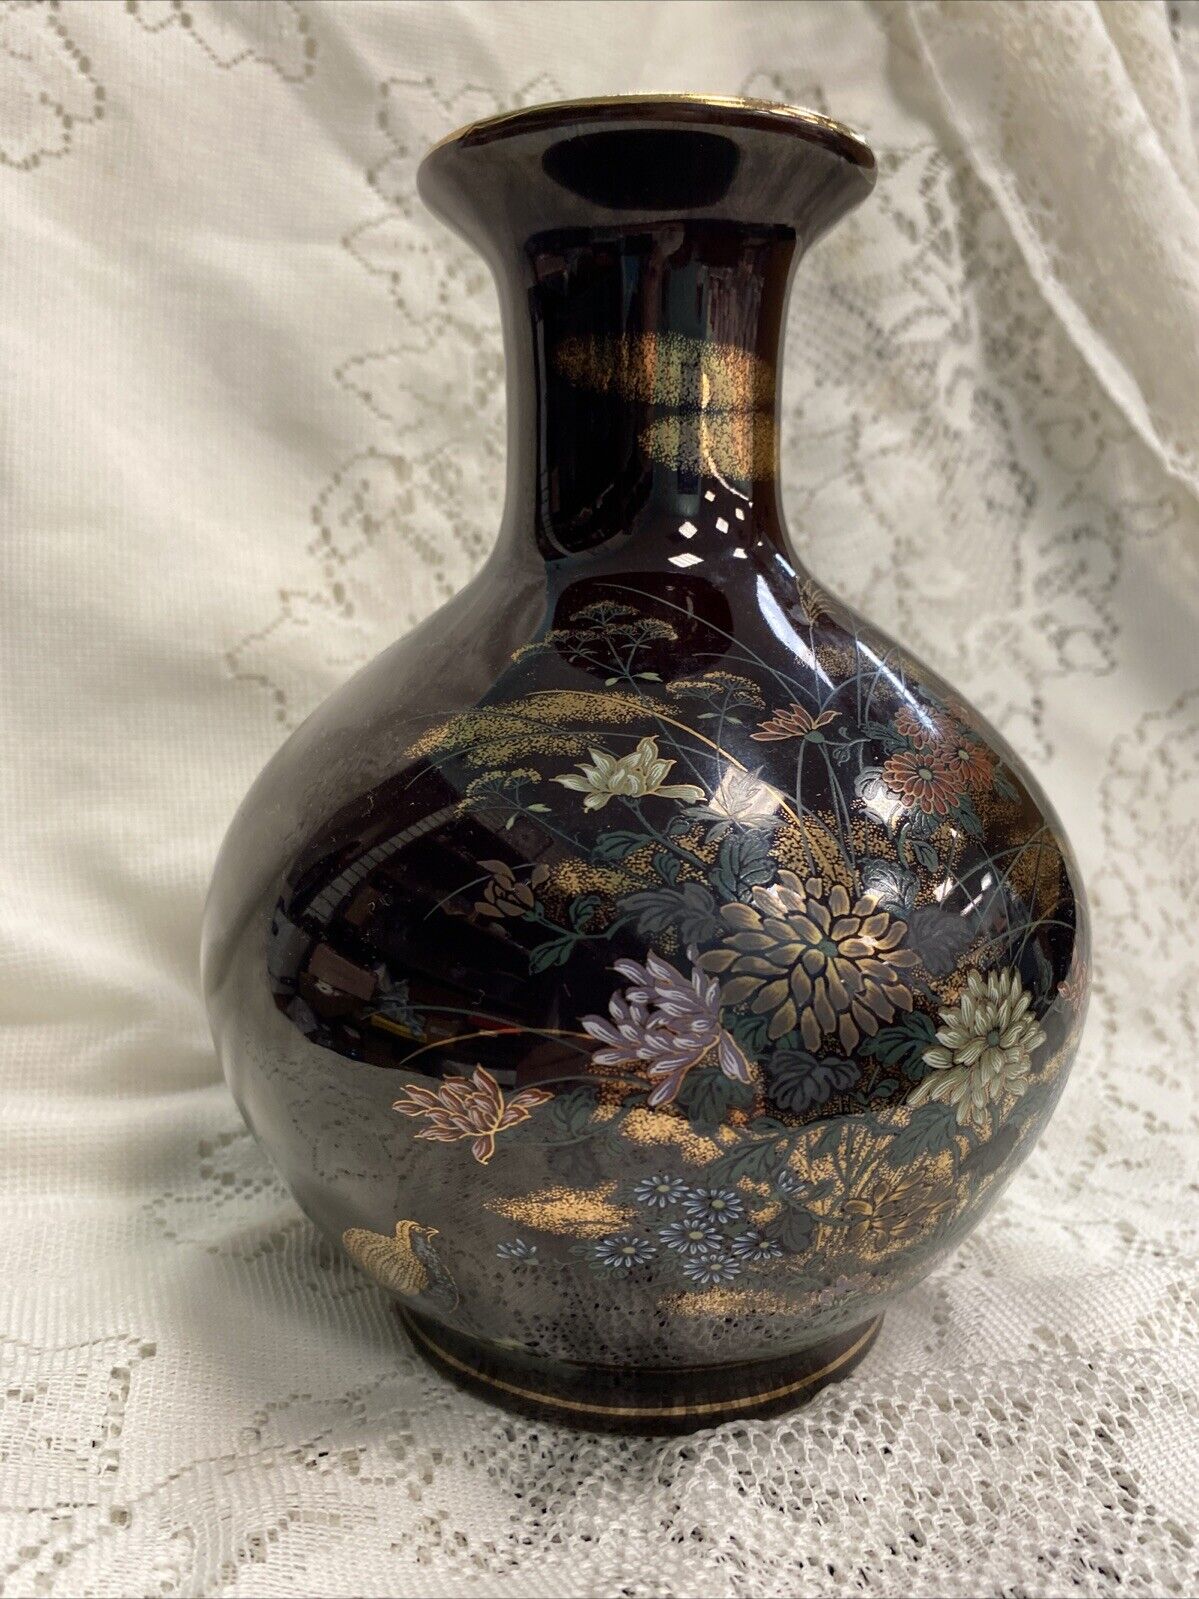 Shibata Japan Vintage Black Porcelain Vase -Polychrome Bird And Flower Design